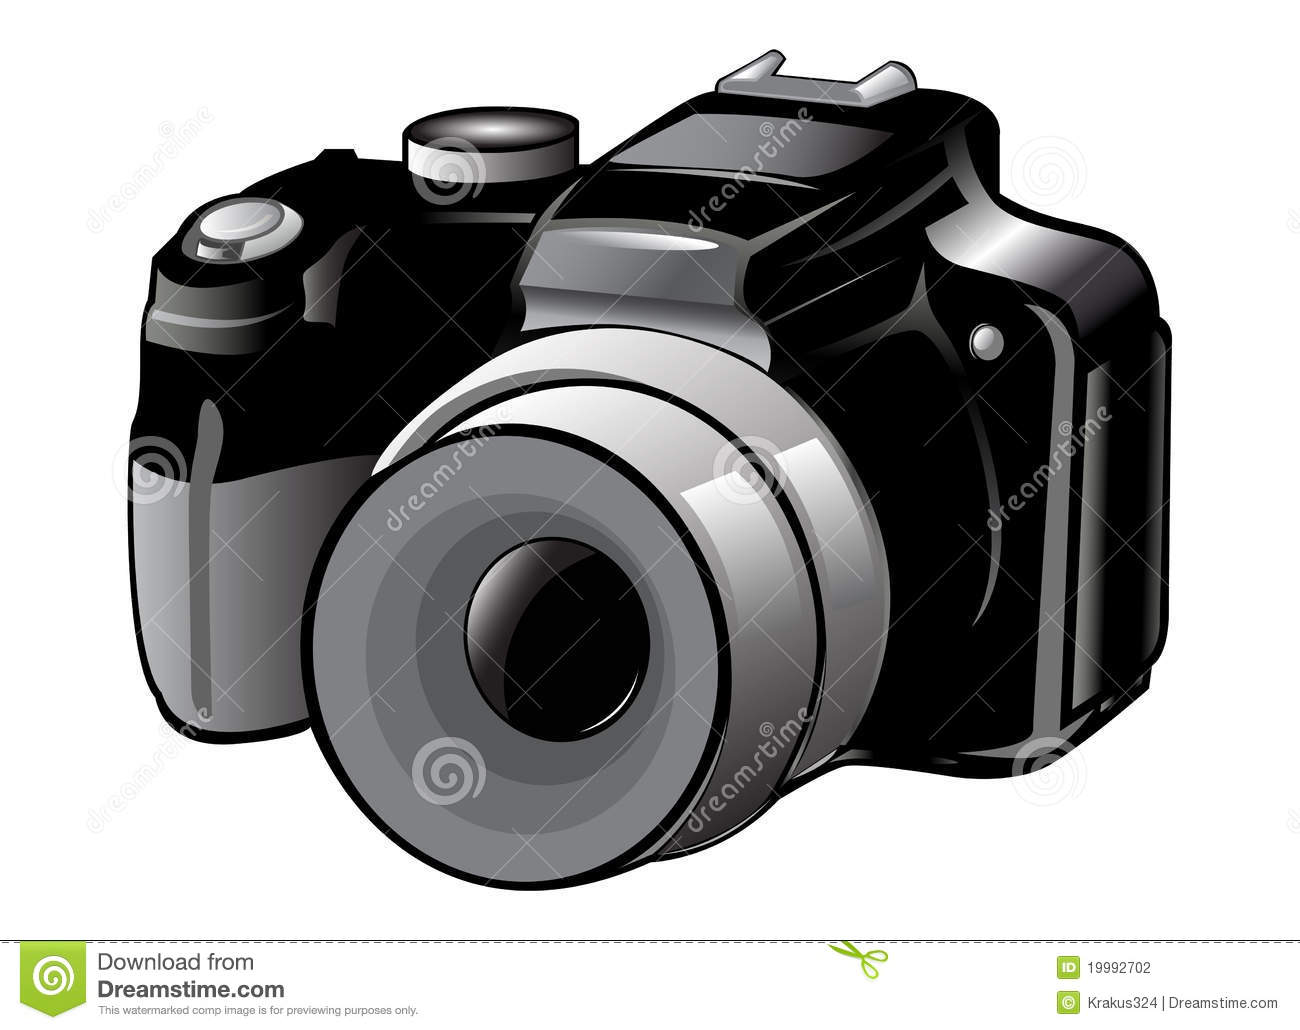 Nikon clipart #4, Download drawings